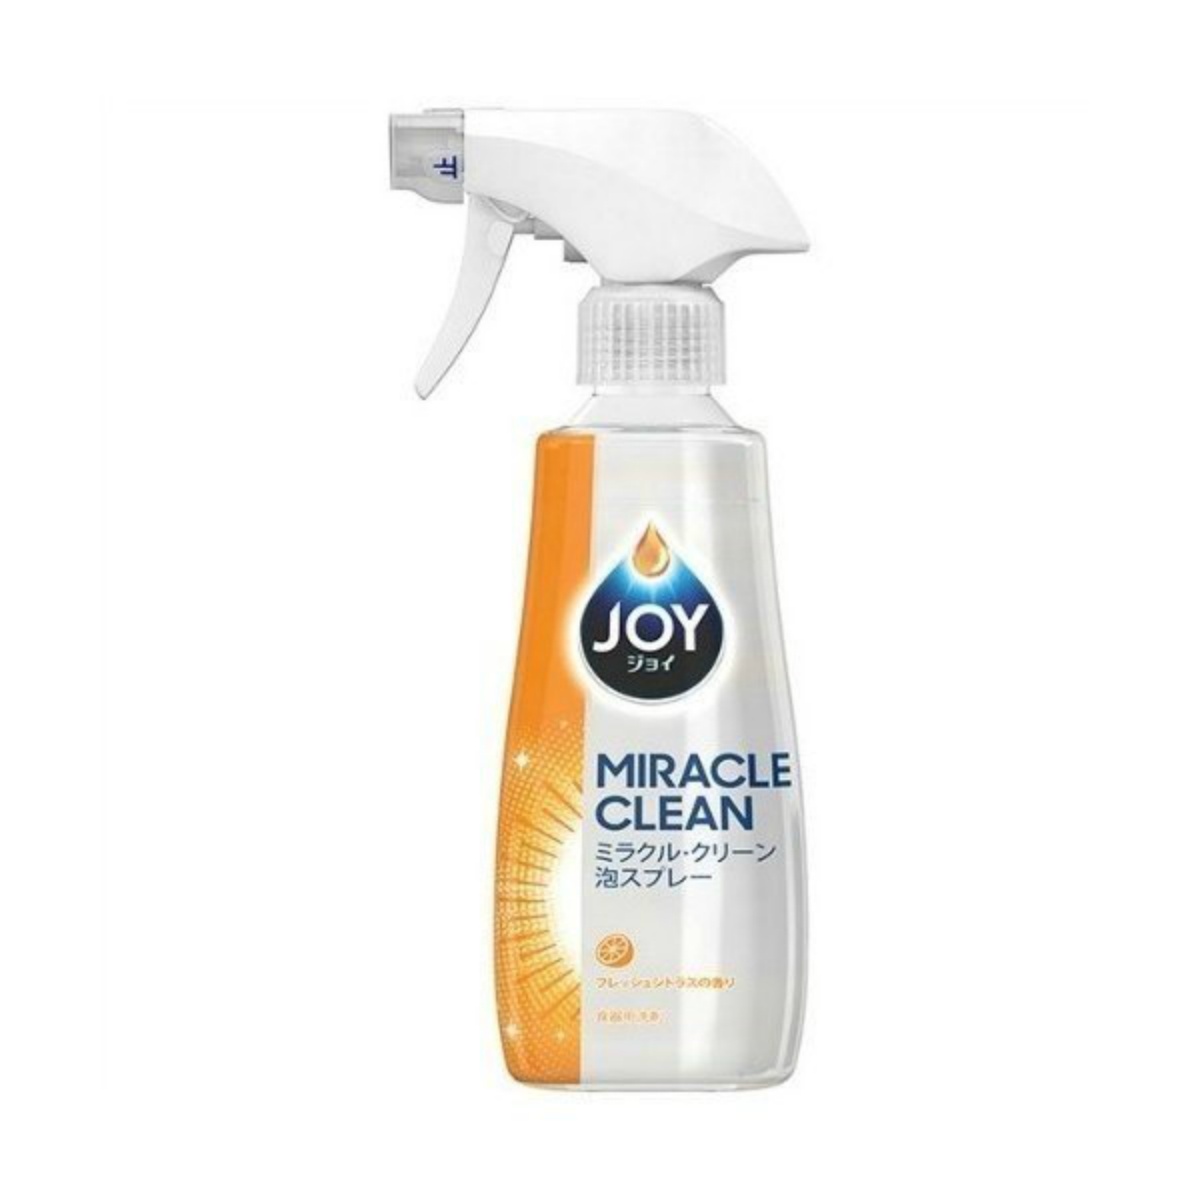 P&G ジョイ ミラクルクリーン泡スプレー フレッシュシトラスの香り 本体 300ml×1 ジョイ(P&G) 台所用洗剤の商品画像